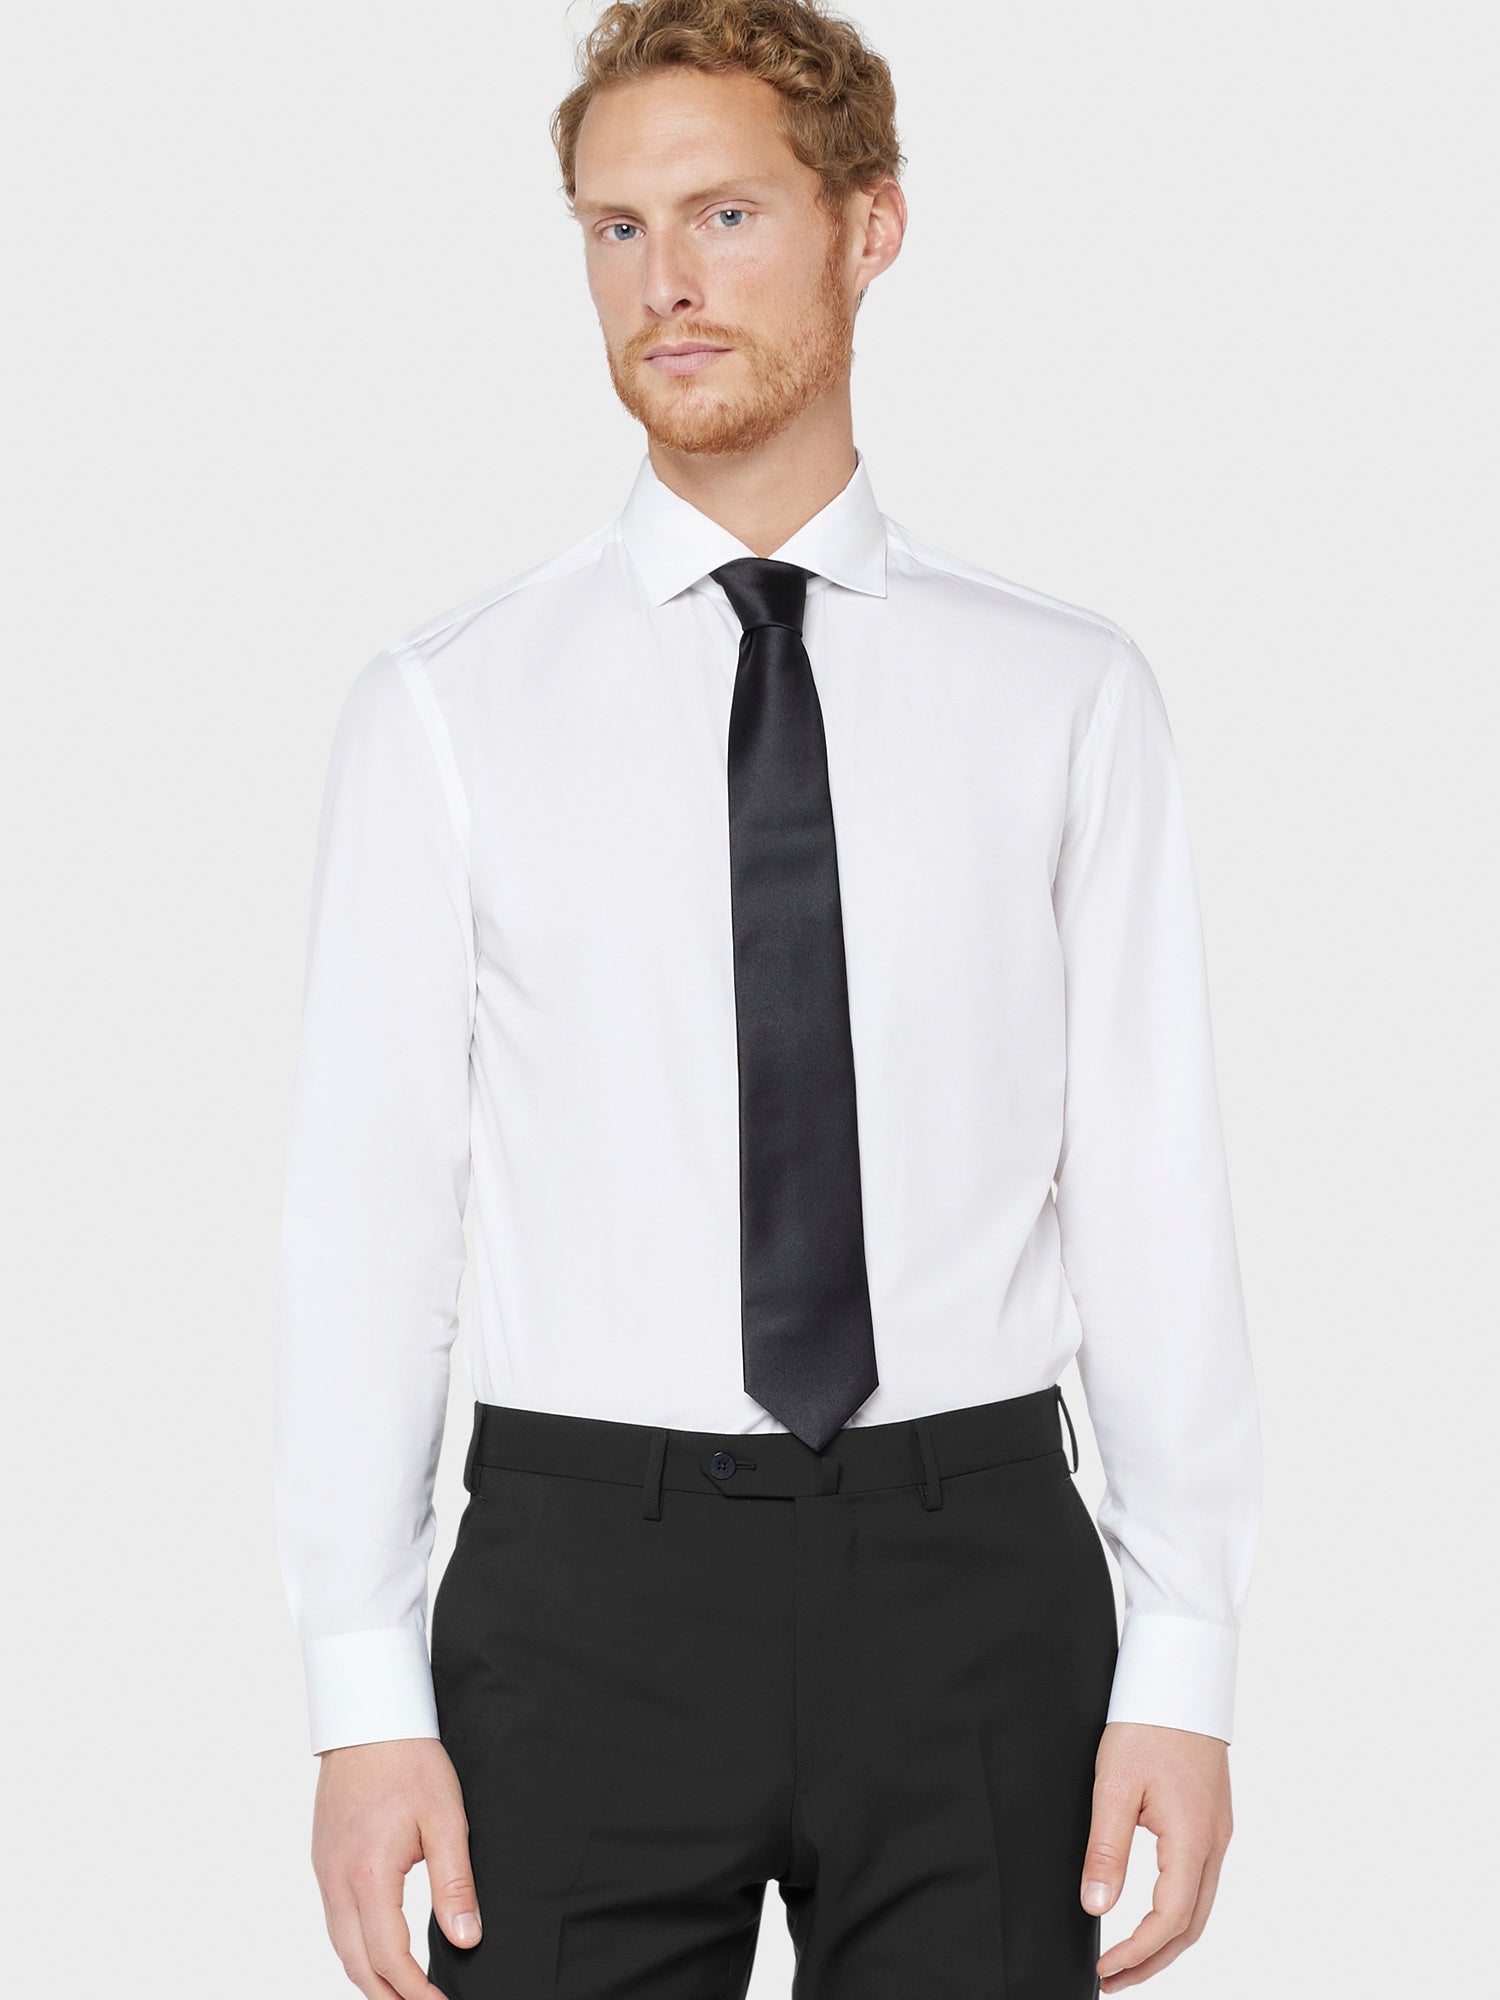 Caruso Menswear Abbigliamento Accessori Uomo Cravatta in seta nero da annodare per cerimonie indossato